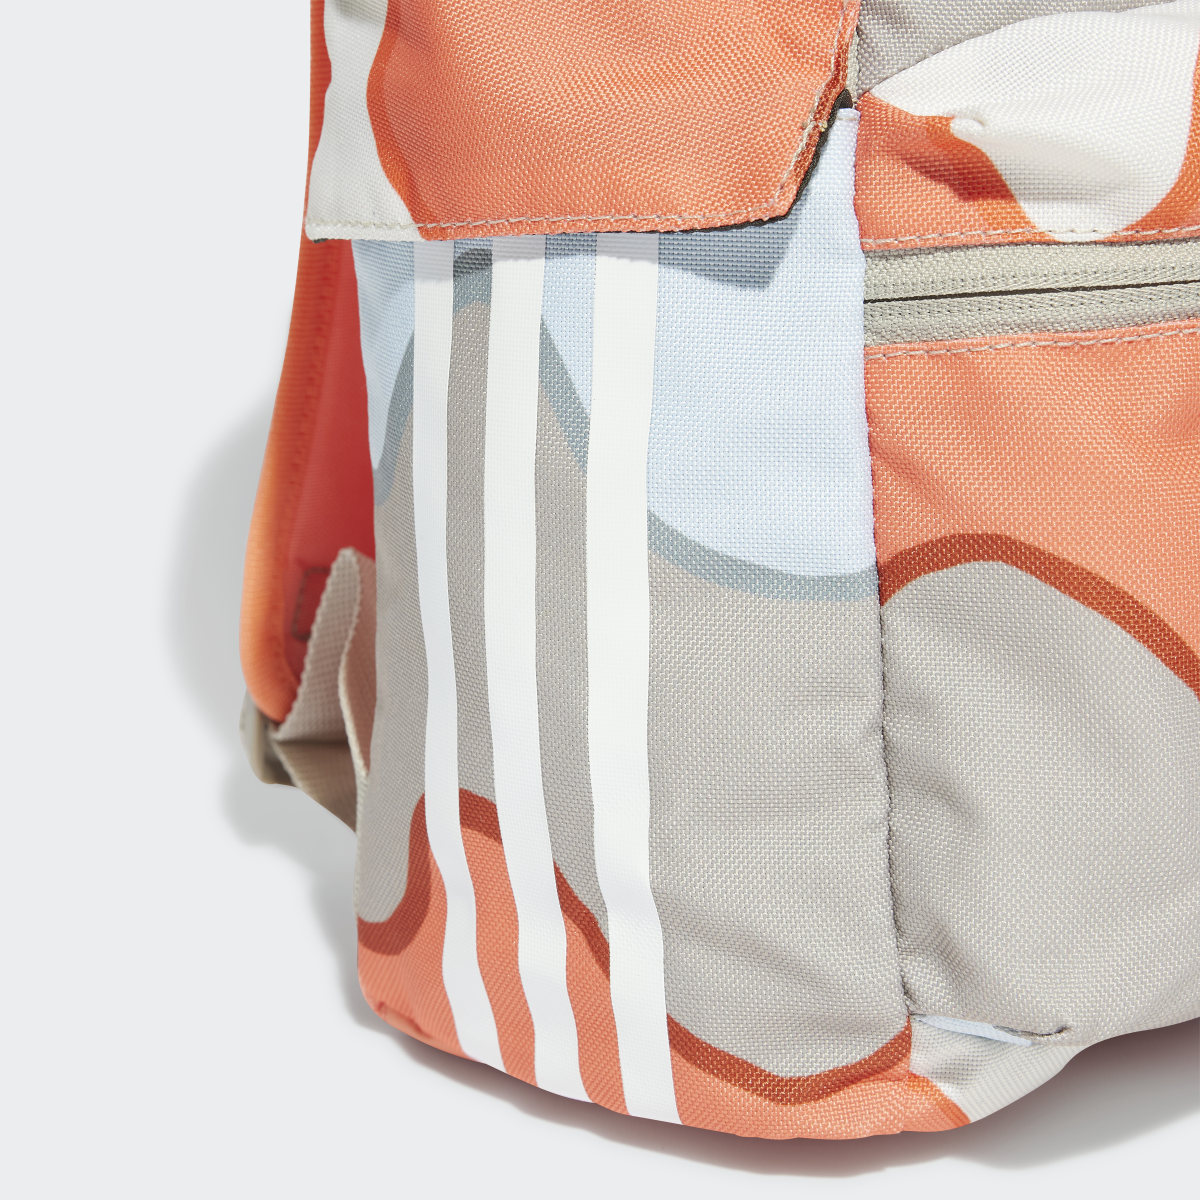 Adidas x Marimekko Backpack. 6